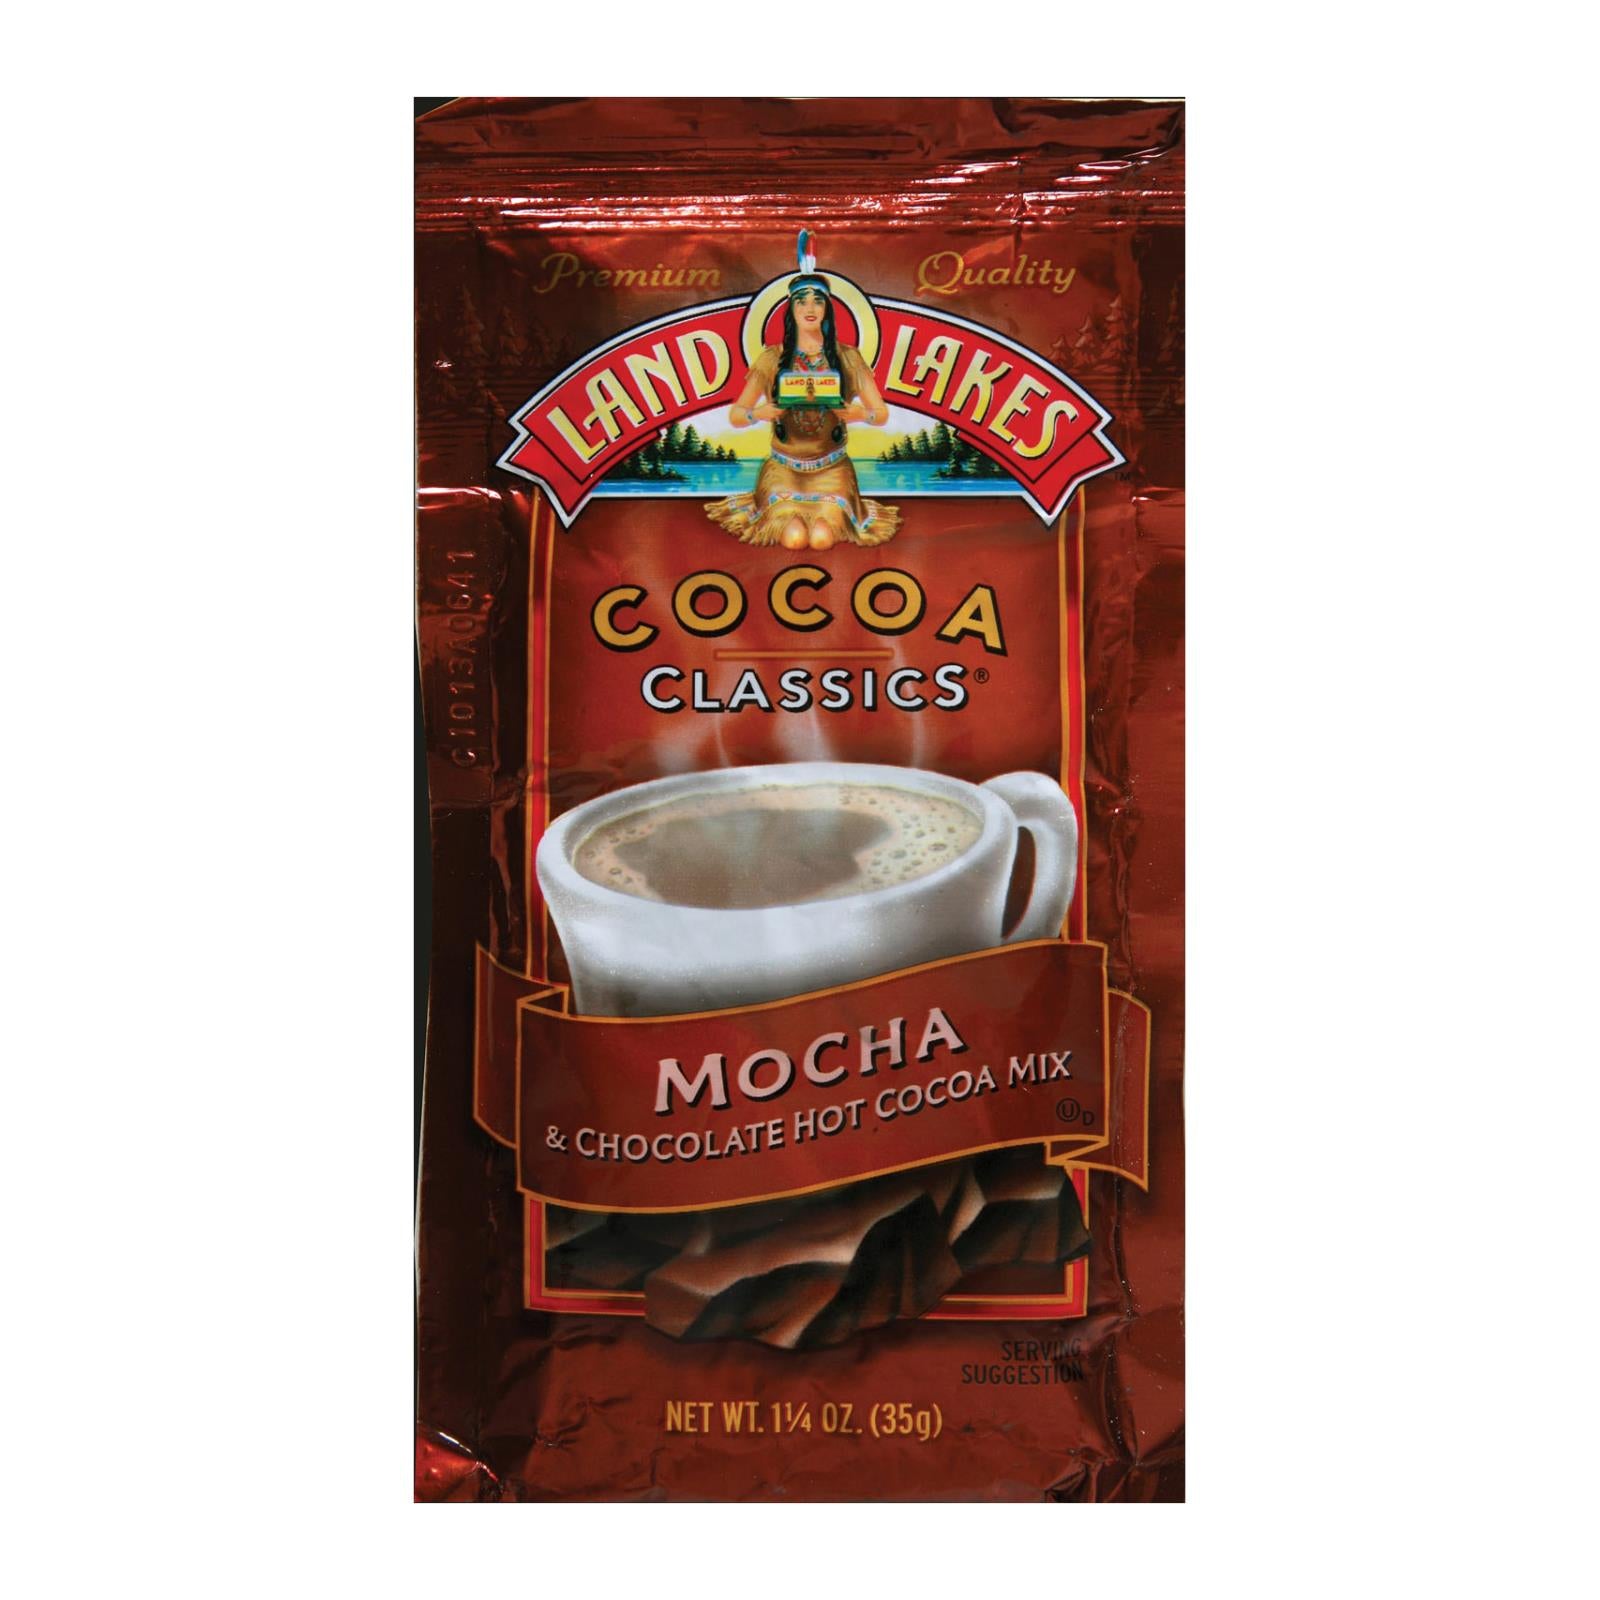 Land O Lakes Cocoa Classics Chocolate & Mocha - Case Of 12 - 1.25 Oz - Whole Green Foods